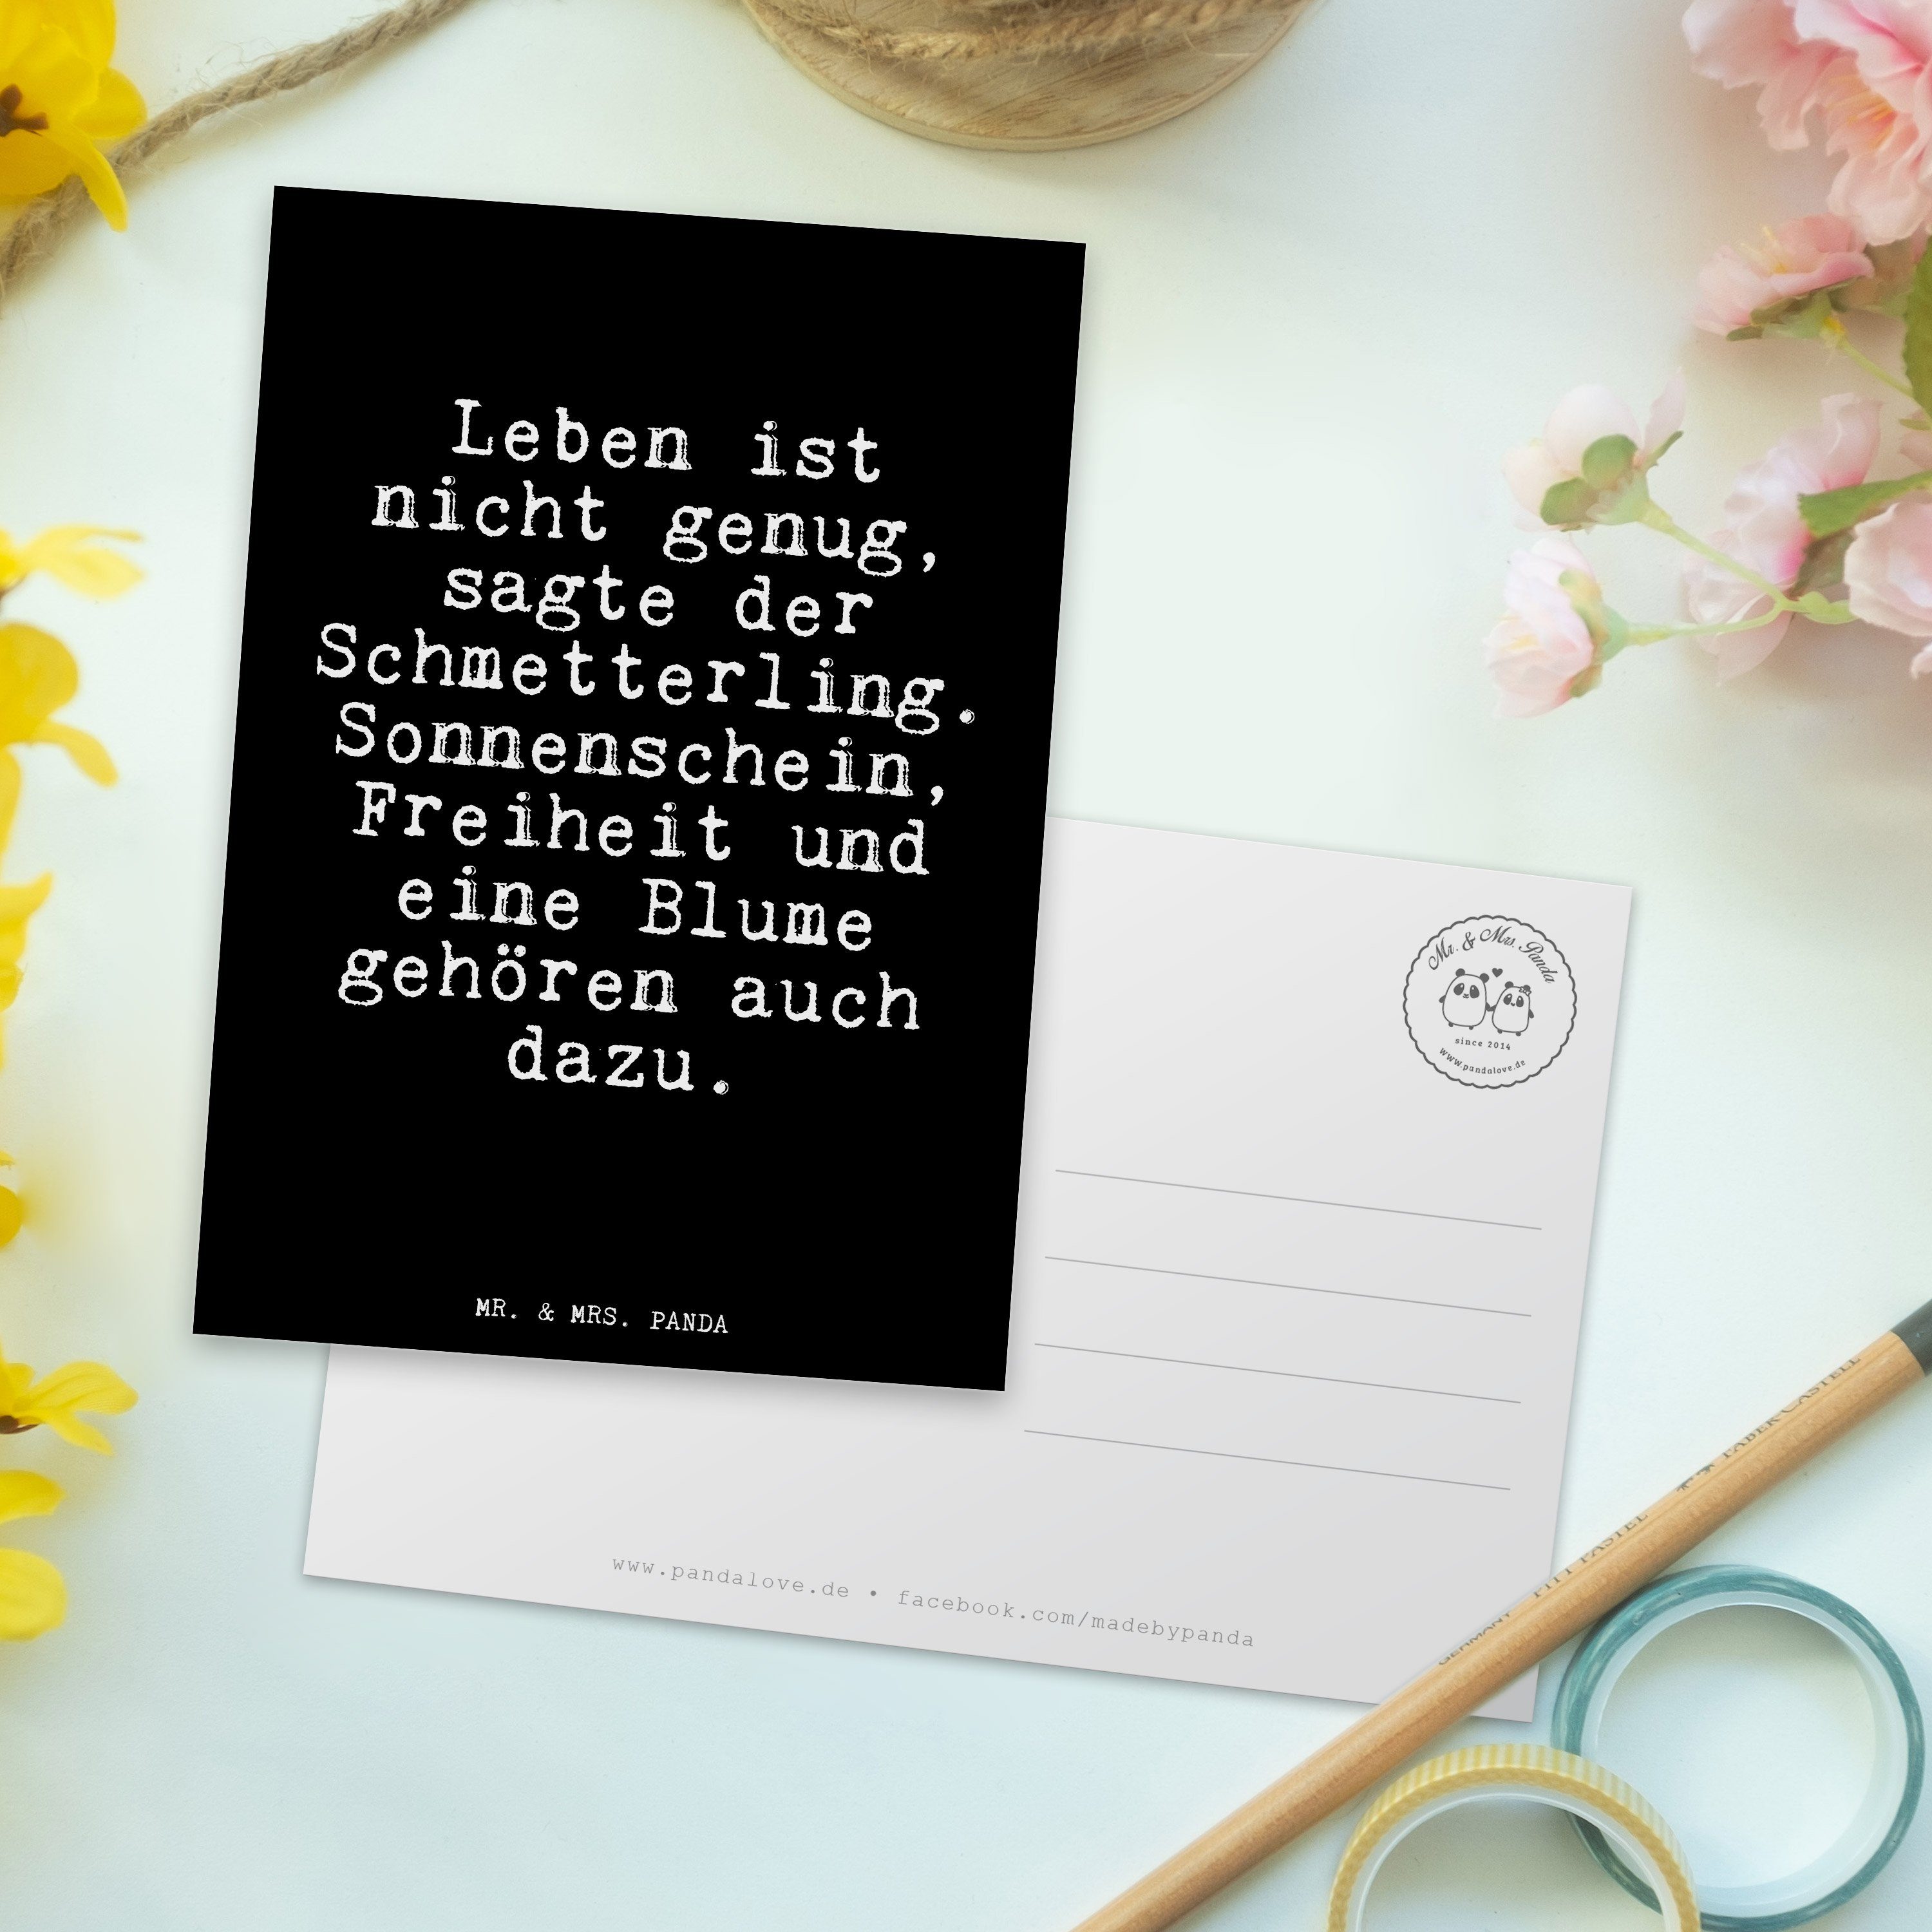 Mr. - Spruch Panda Schwarz & Mrs. Leben genug,... Postkarte Geschenk, Spruch, nicht Glizer ist -